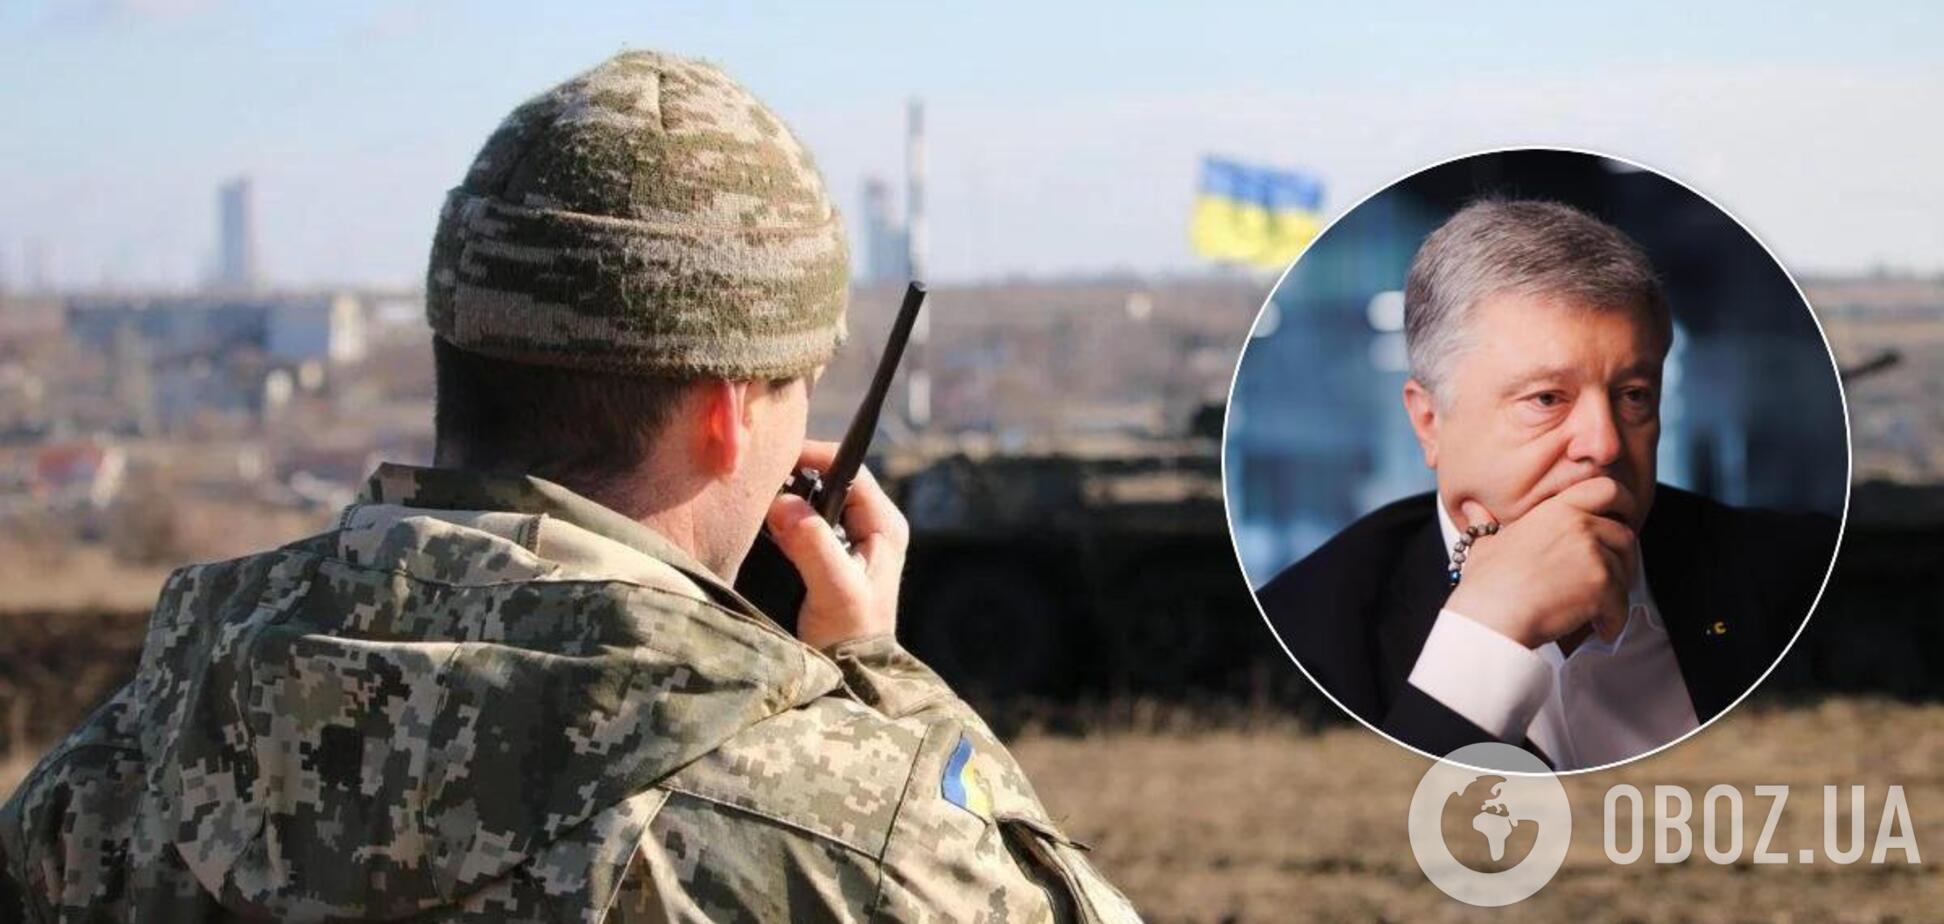 Порошенко: Украине нельзя снижать боеготовность из-за скопления войск РФ на границе